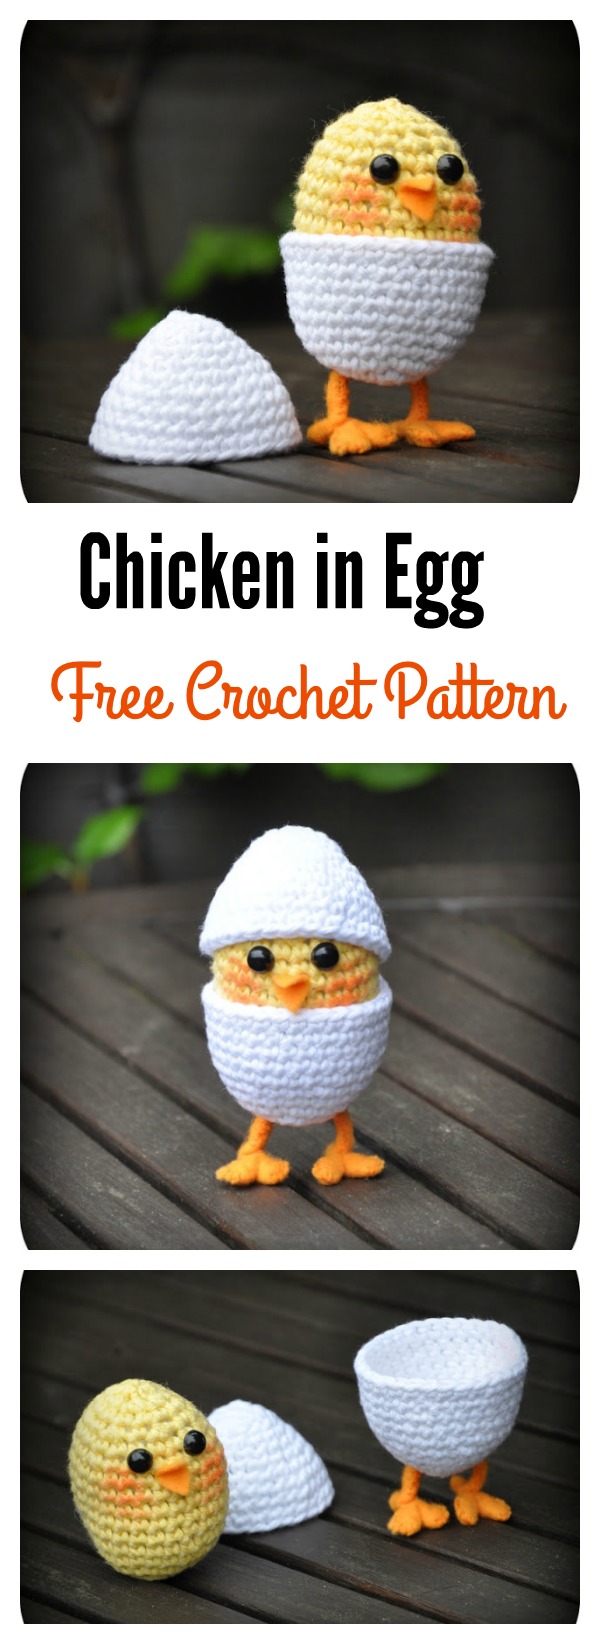 Chicken in Egg Free Crochet Pattern